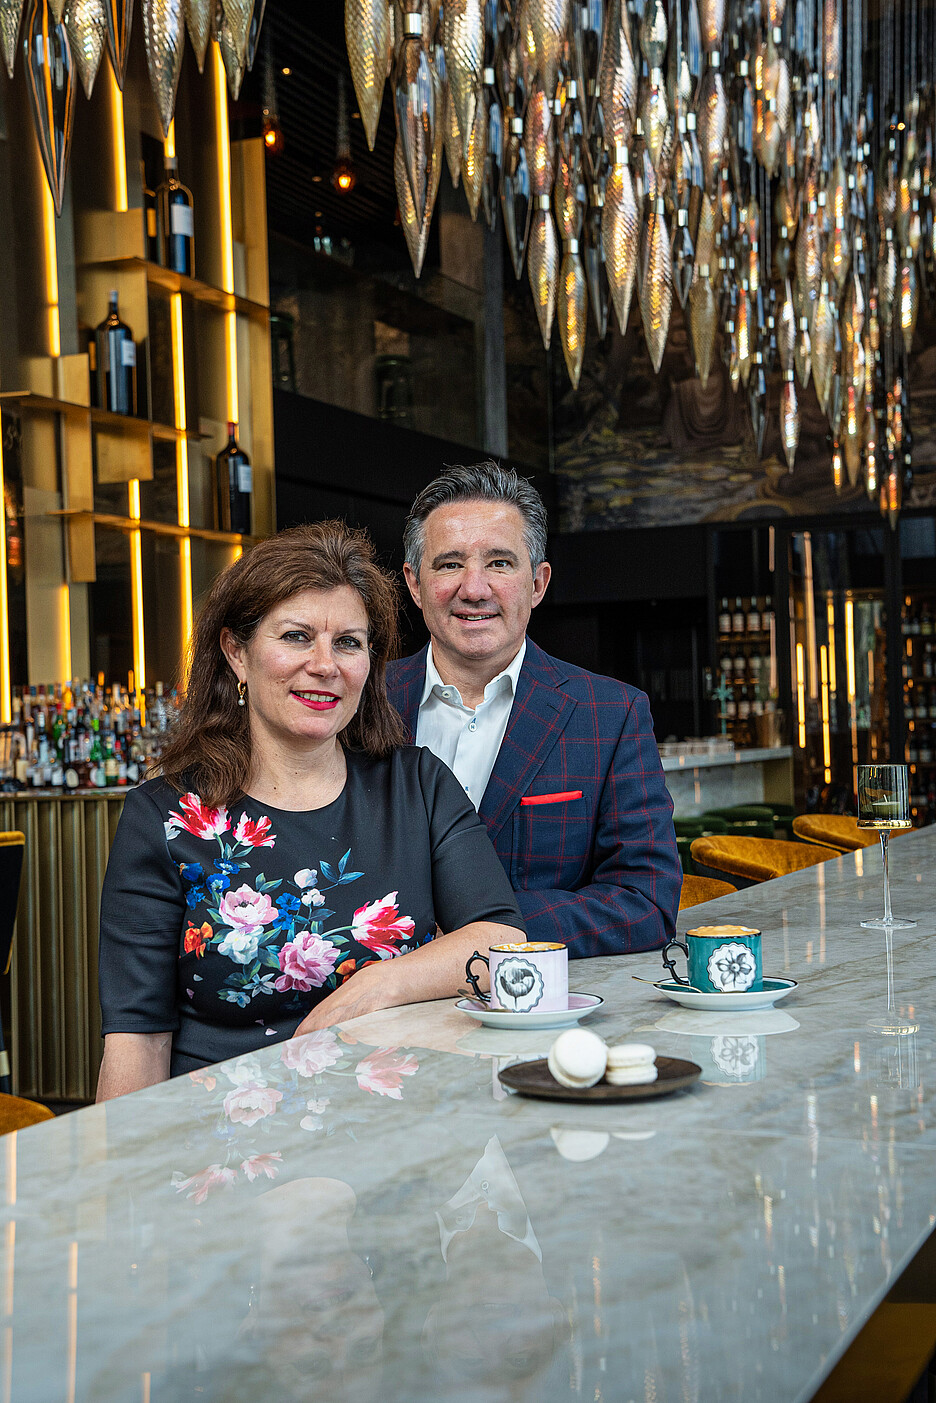 Das Gastro-Unternehmer-Paar Daniela und Markus Segmüller legt auch grossen Wert auf eine überdurchschnittliche Kaffeekultur, welche in all seinen Lokalen bewusst gepflegt und gelebt wird.